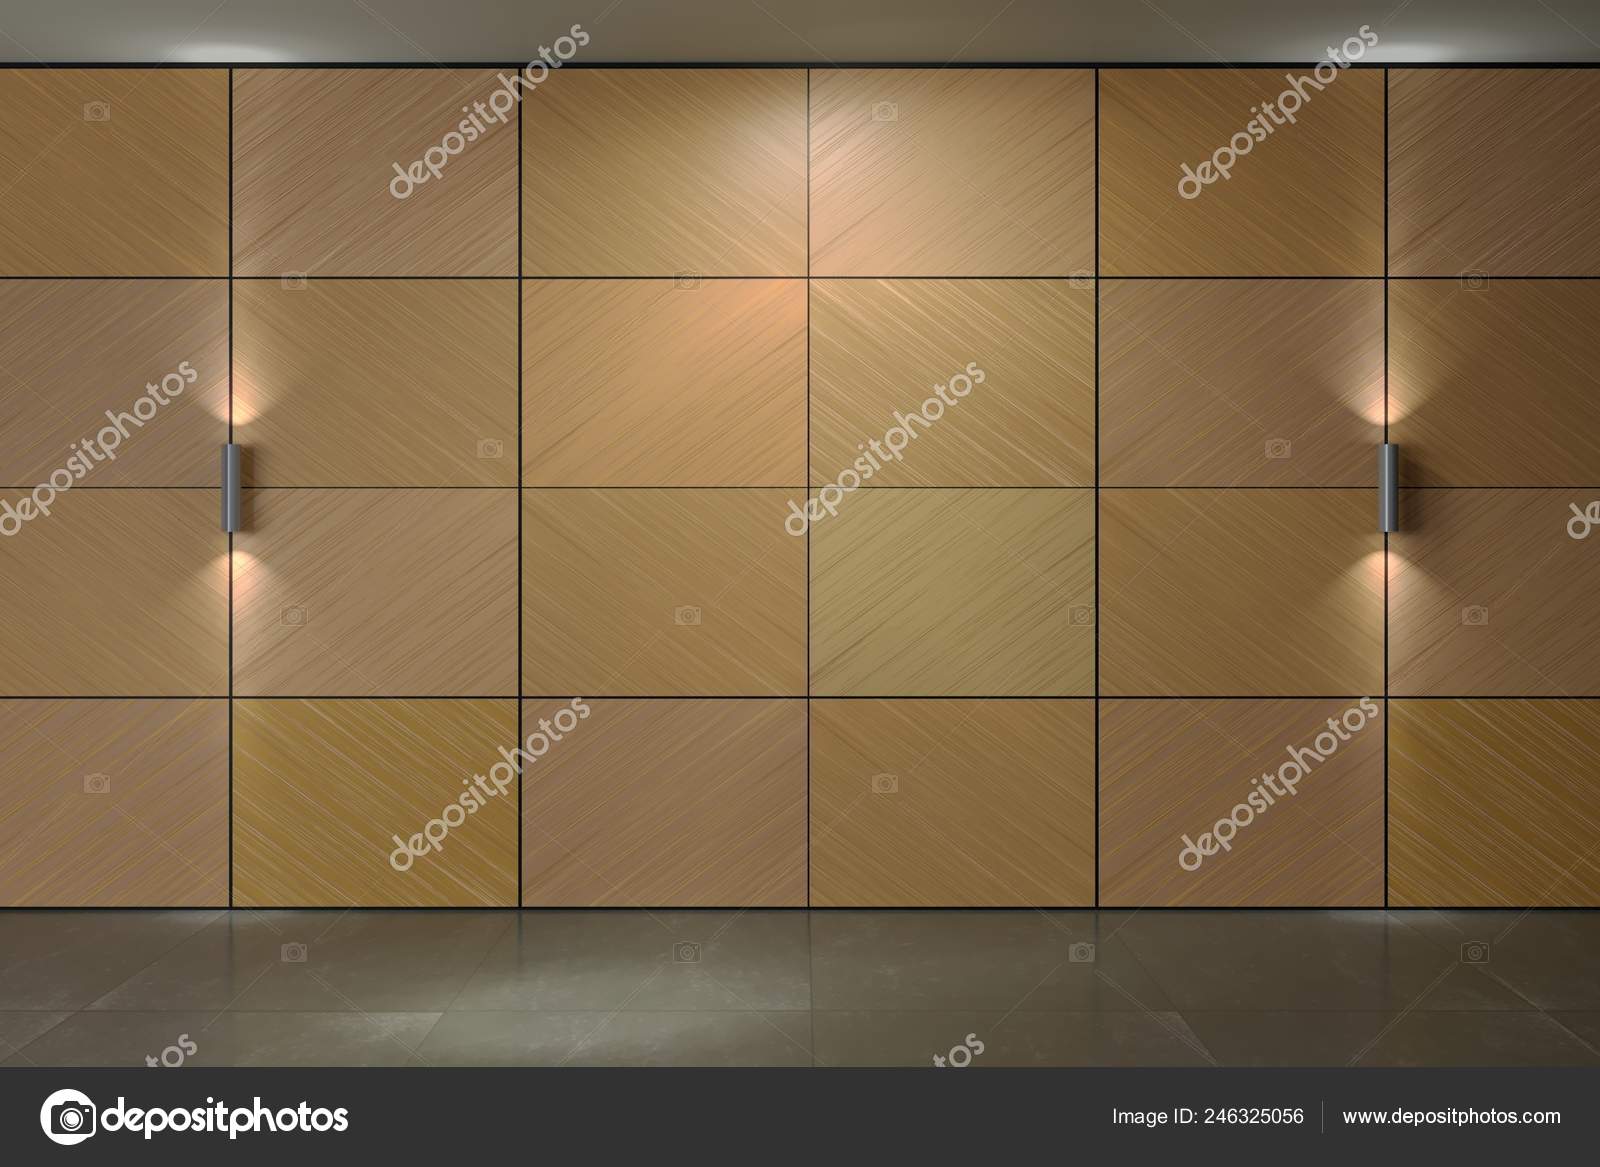 Background Wall Of Plywood Panels Stock Photo C Denisik11